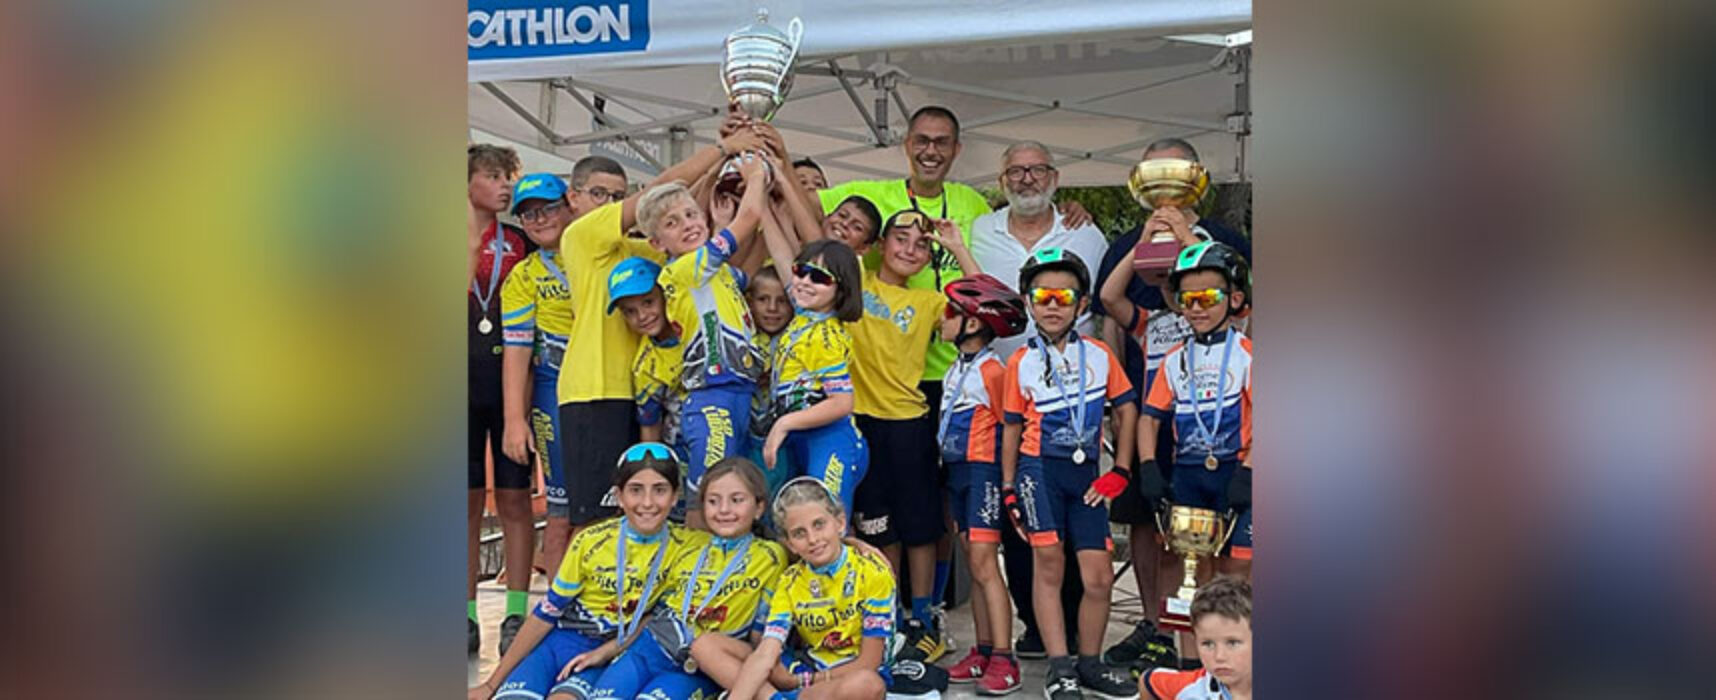 Ludobike Racing Team, risultati di assoluto valore al “Gran Premio Bari-Bat”